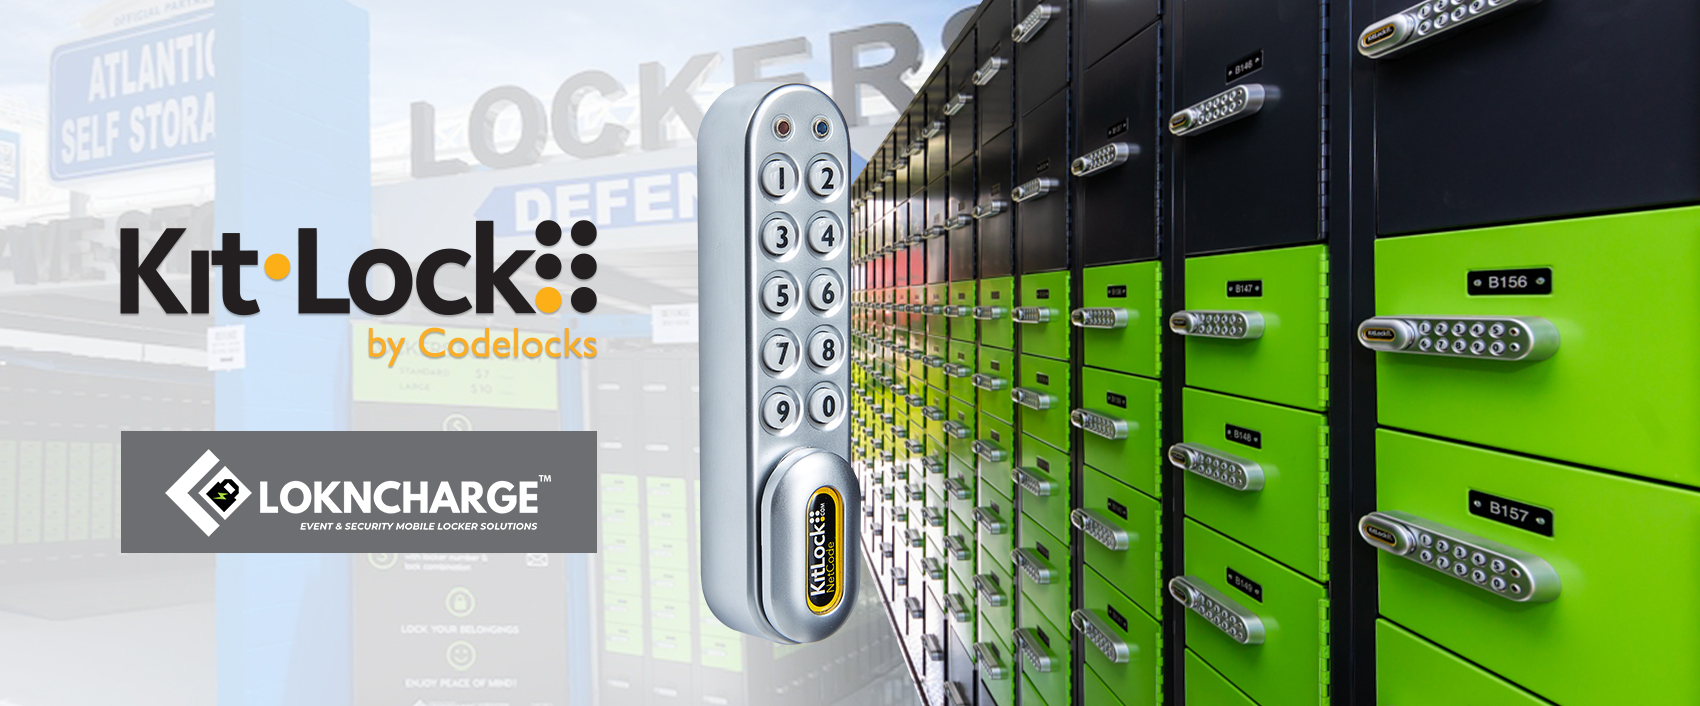 Kitlock electrónica castillo kl1060 Netcode-temporal acceso beschränkbare-códigos 